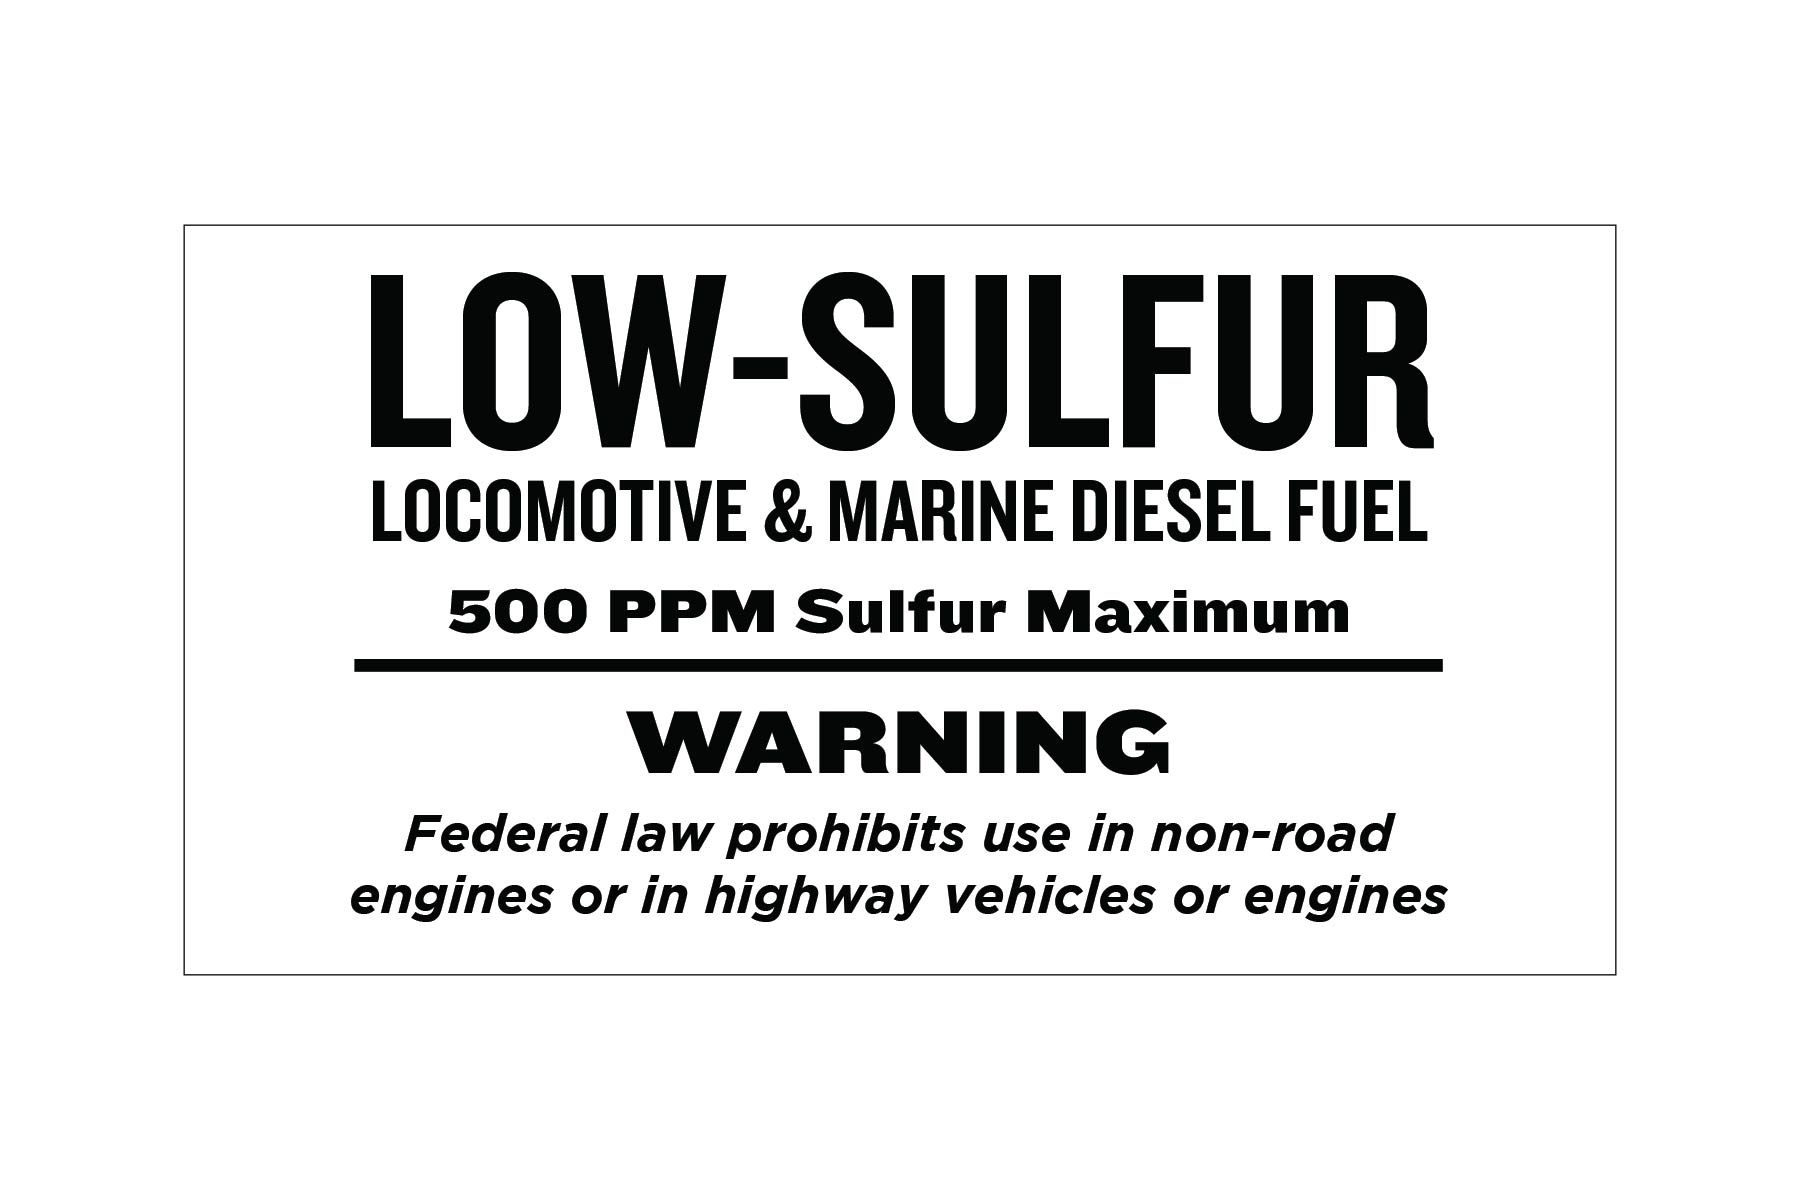 low-sulfur-locomotive-marine-diesel-fuel-decal